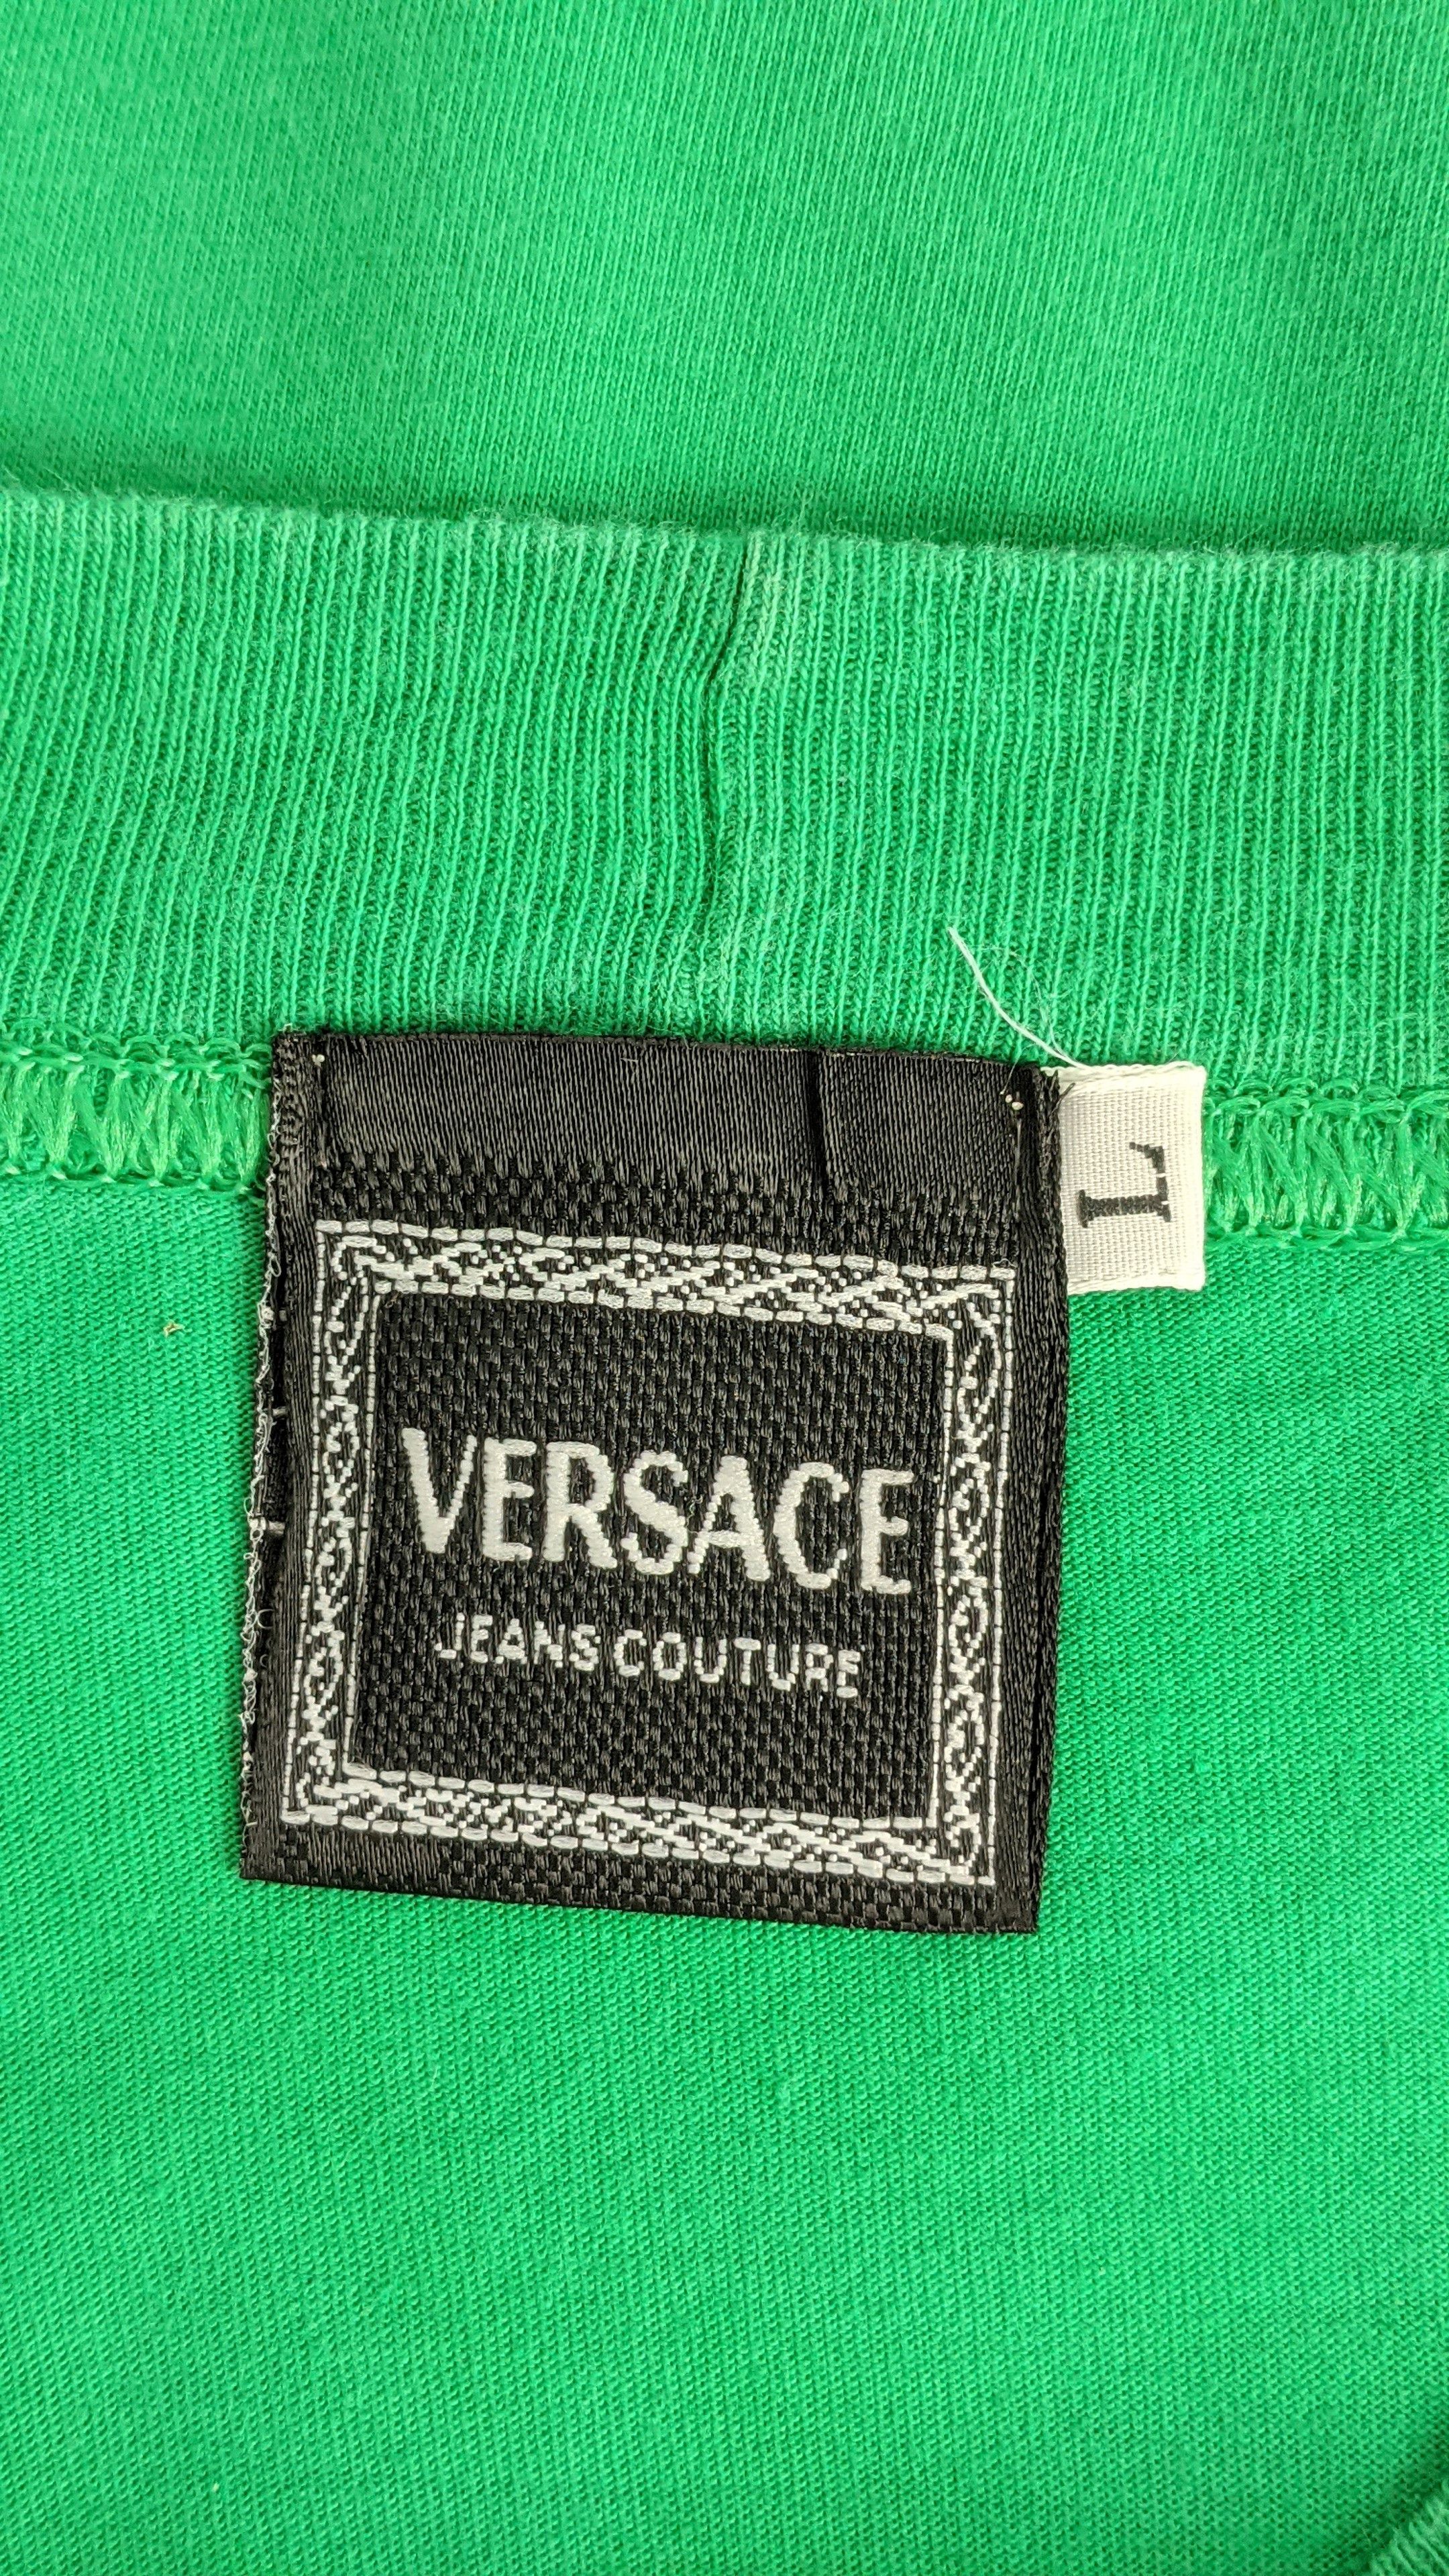 Versace Jeans Couture Vintage Versace Jeans Couture Basic Oversized shirt Size US L / EU 52-54 / 3 - 4 Thumbnail